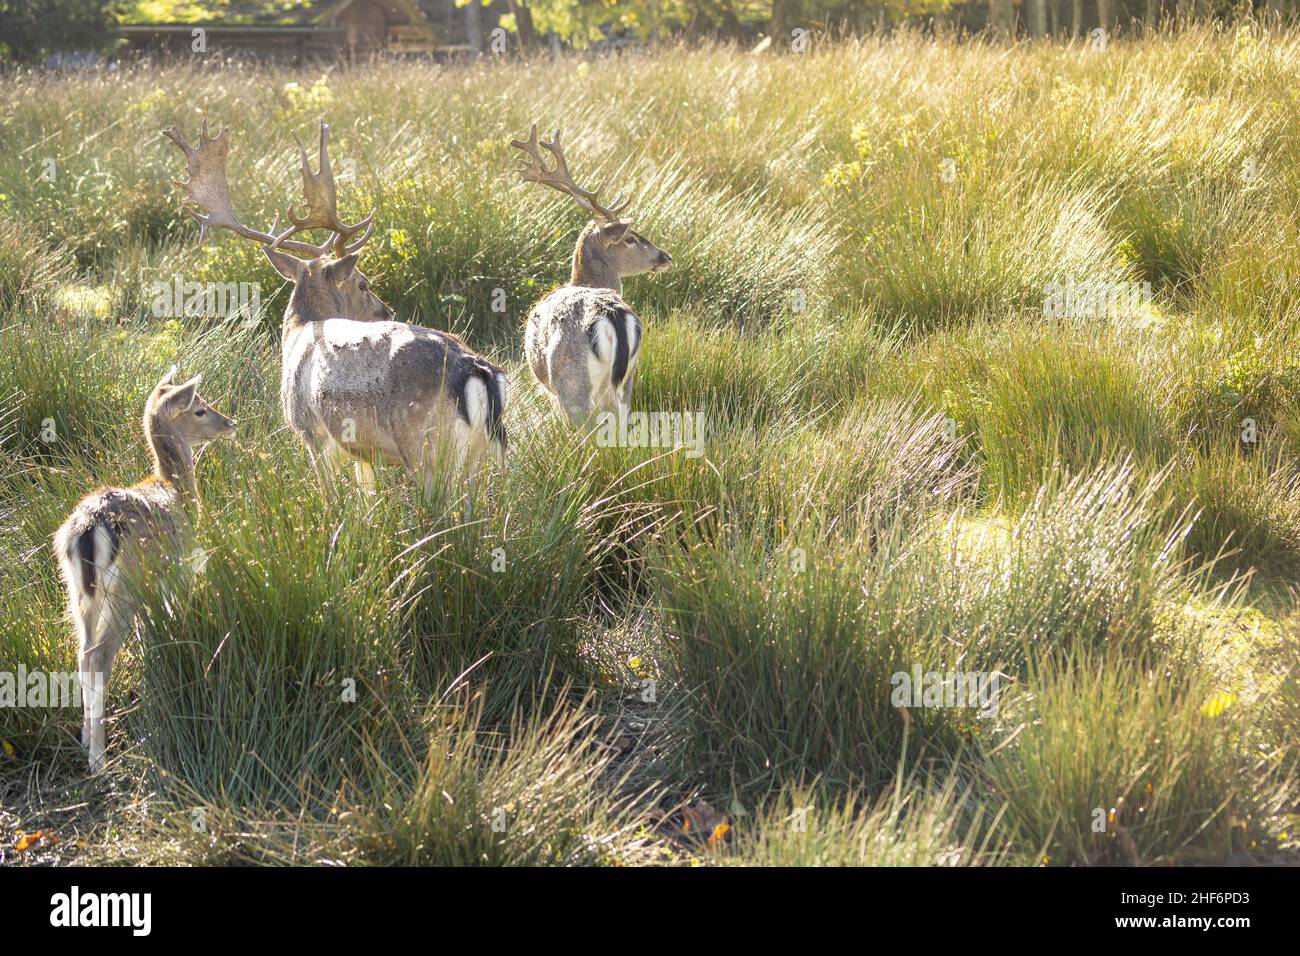 Un groupe de adorables deers est à l'affût de quelque chose dans un pré herbeux lors d'une journée lumineuse et ensoleillée Banque D'Images